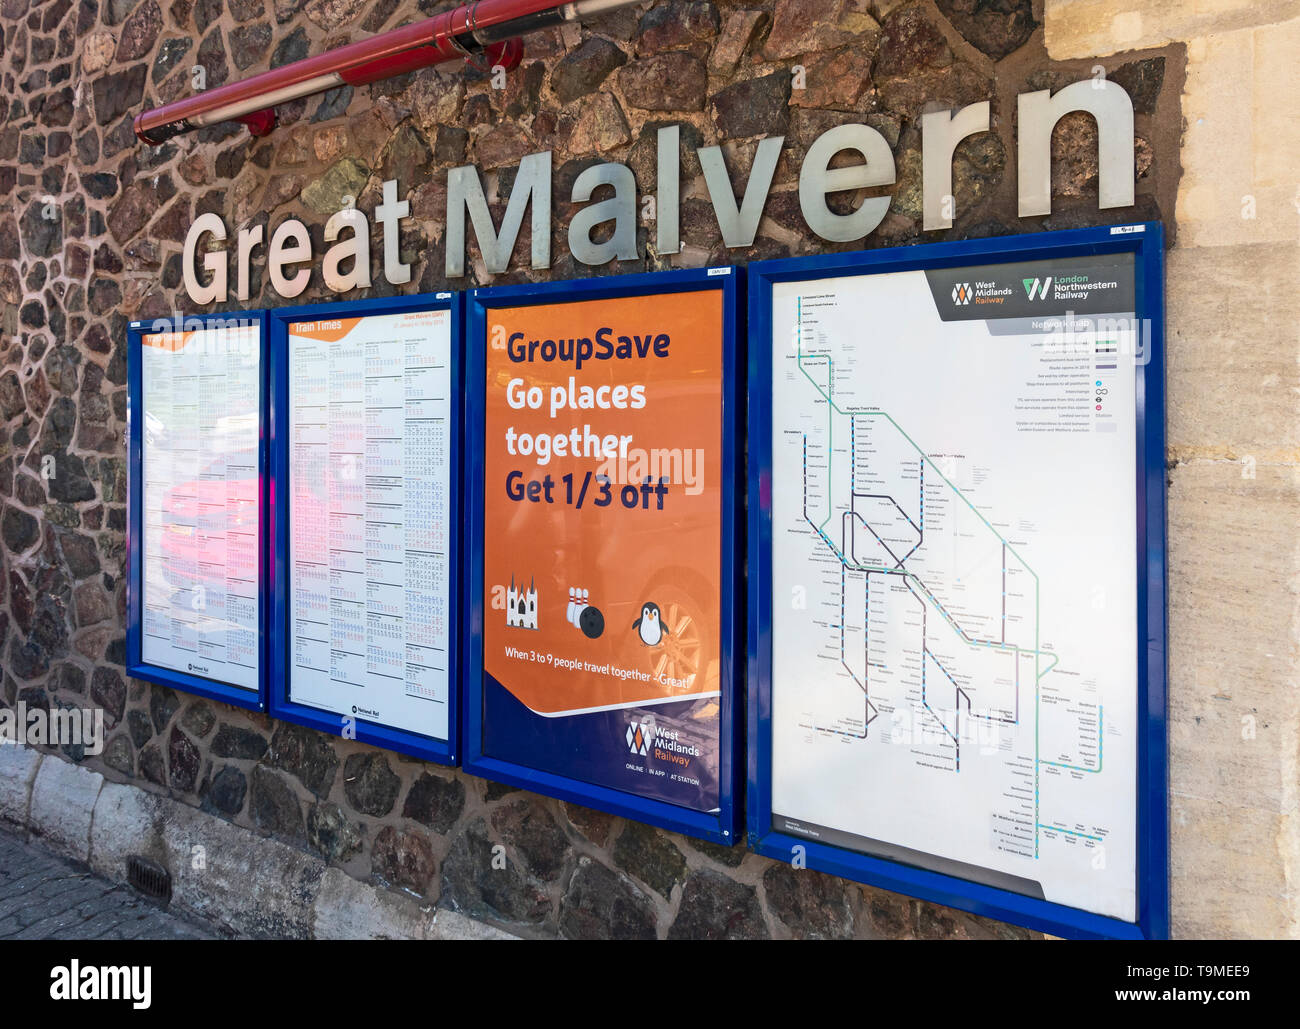 Tablones de anuncios / paneles informativos sobre el muro exterior de Great Malvern estación en Malvern, Worcestershire, Inglaterra, Reino Unido, incluyendo calendarios, un rail net Foto de stock